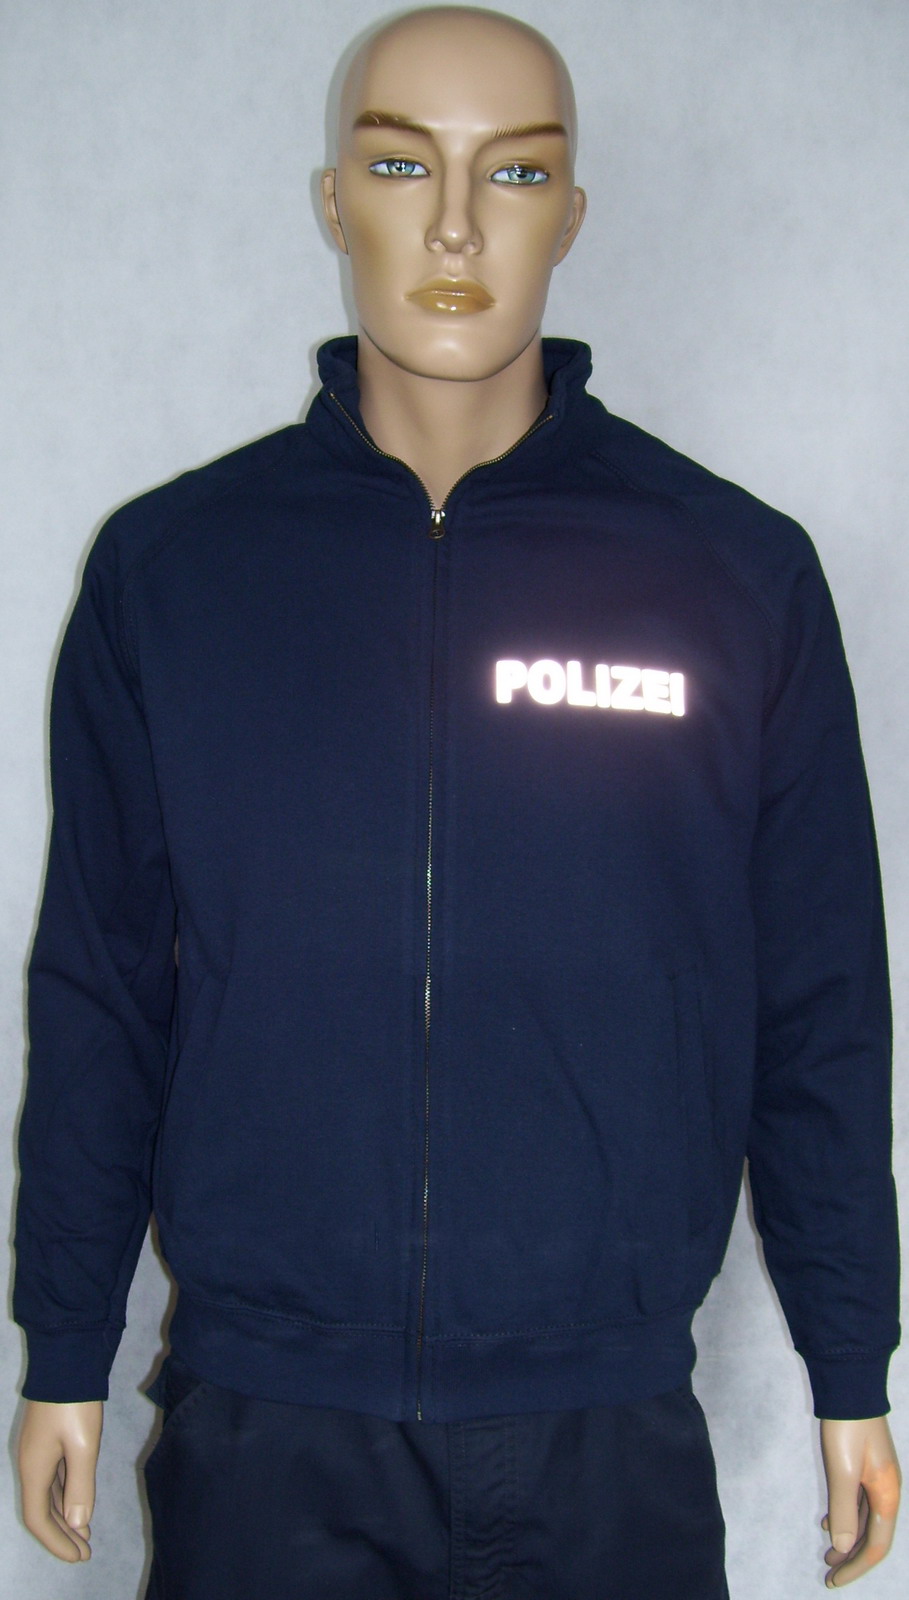 POLIZEI Sweatjacke Jacke schwarz oder marineblau versch Druckfarbenauswahl P3 